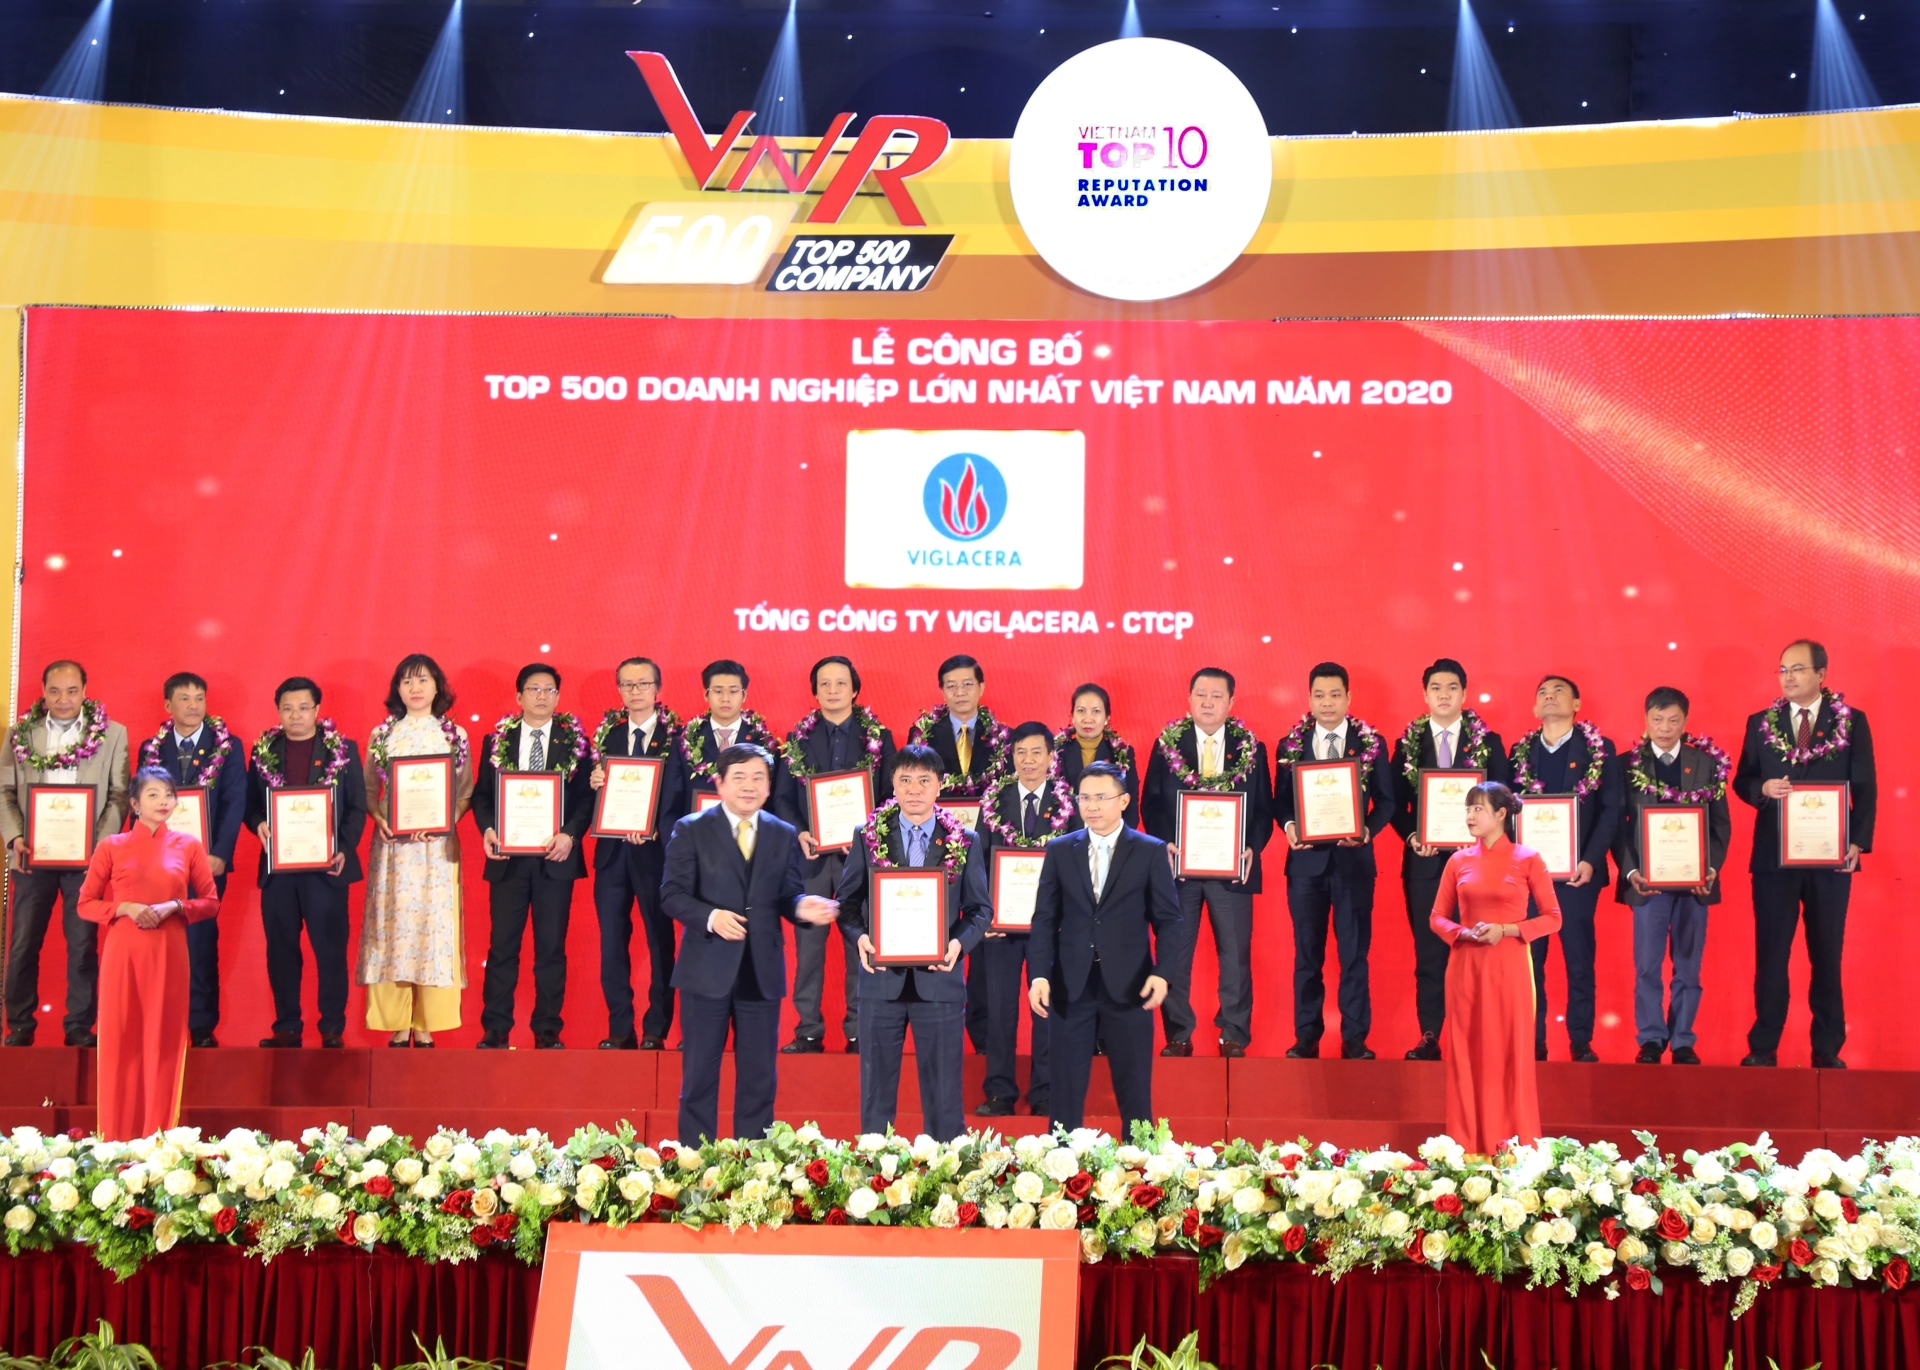 VNR500: Tổng công ty Viglacera – CTCP 3 năm liên tiếp giữ vị trí dẫn đầu trong Top 500 doanh nghiệp lớn nhất Việt Nam trong ngành sản xuất, kinh doanh vật liệu xây dựng